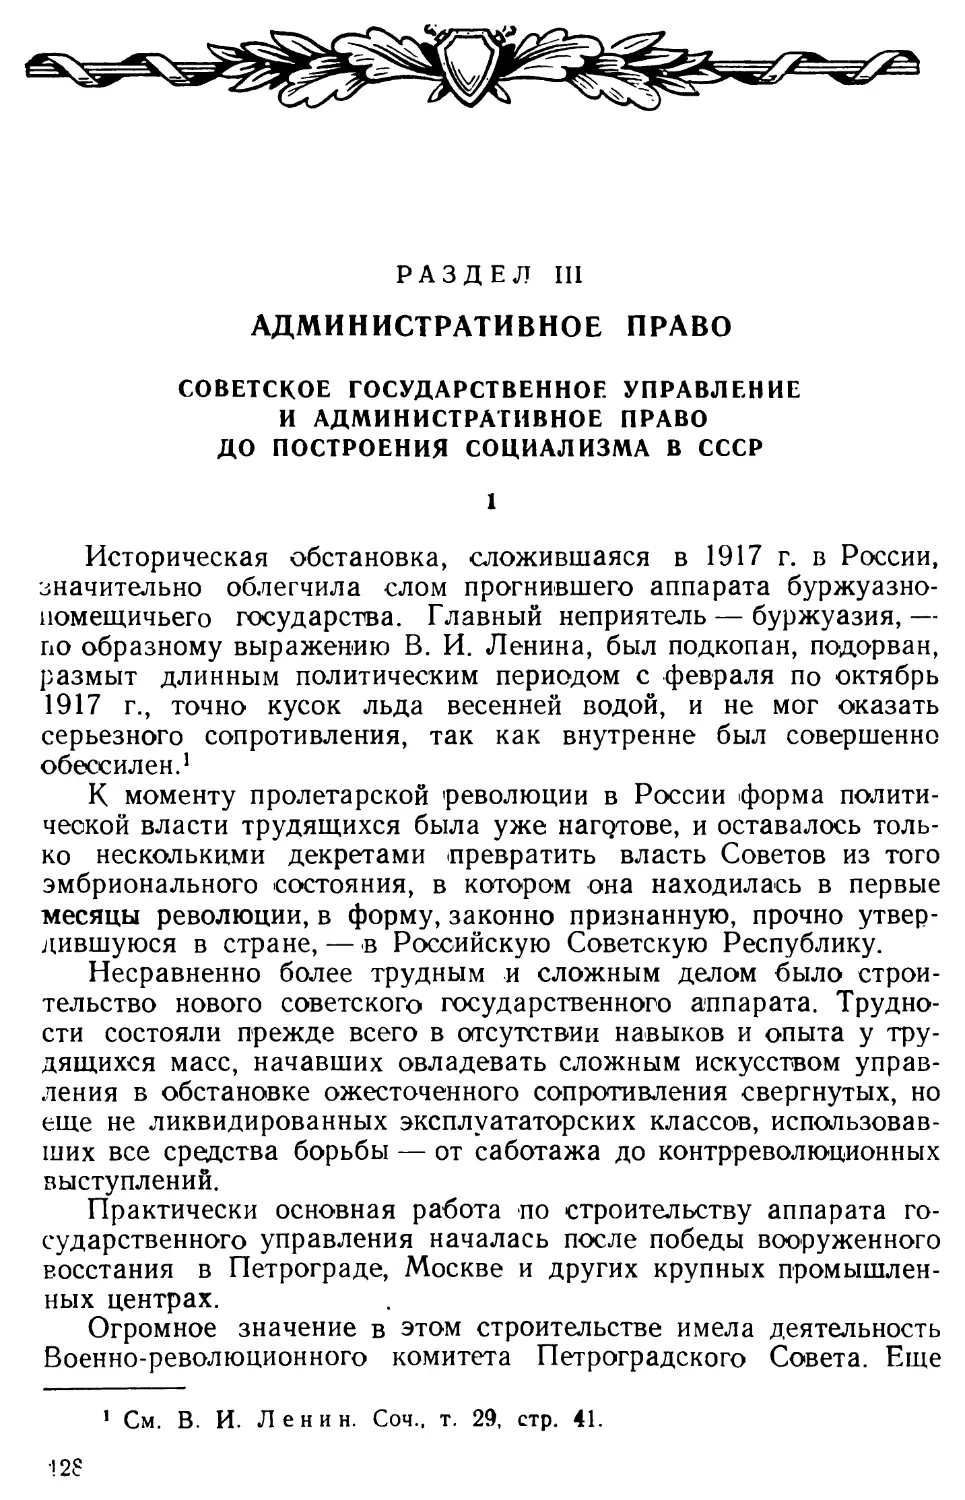 Советское государственное управление и административное право до построения социализма в СССР.